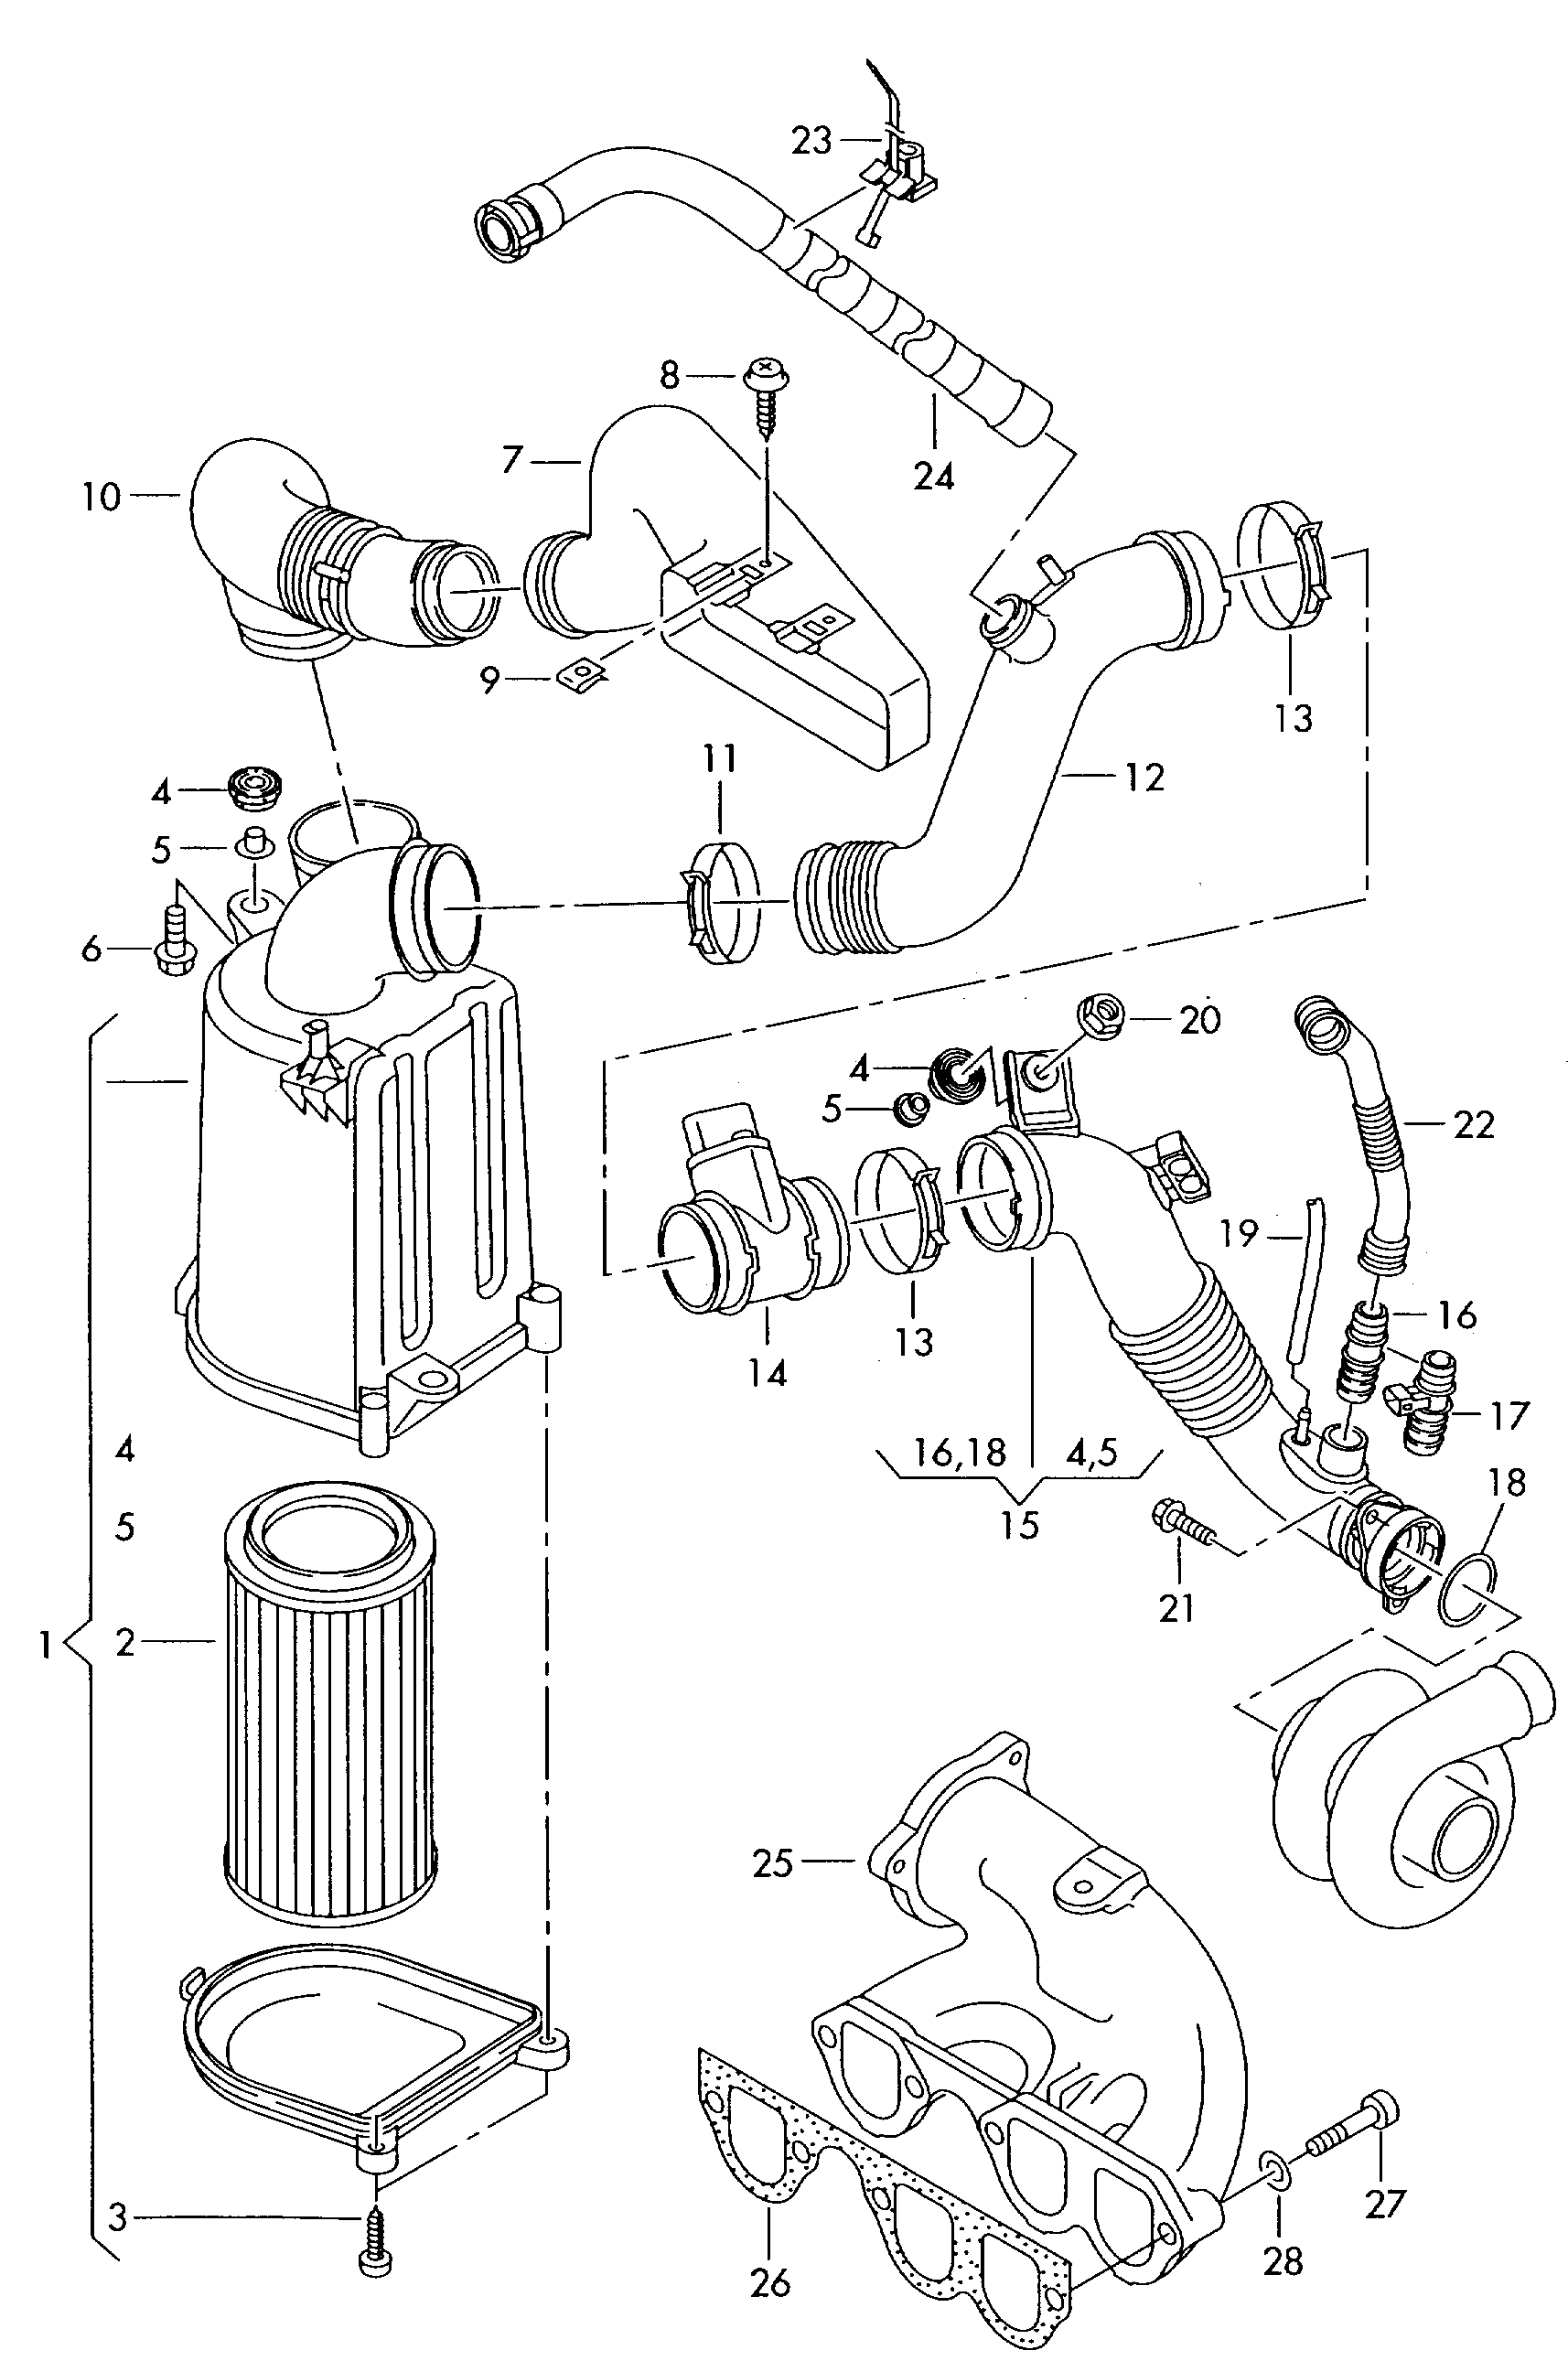 带连接件的
空气滤清器; 进气接头; 空气质量流量计 - Audi A2(A2)  